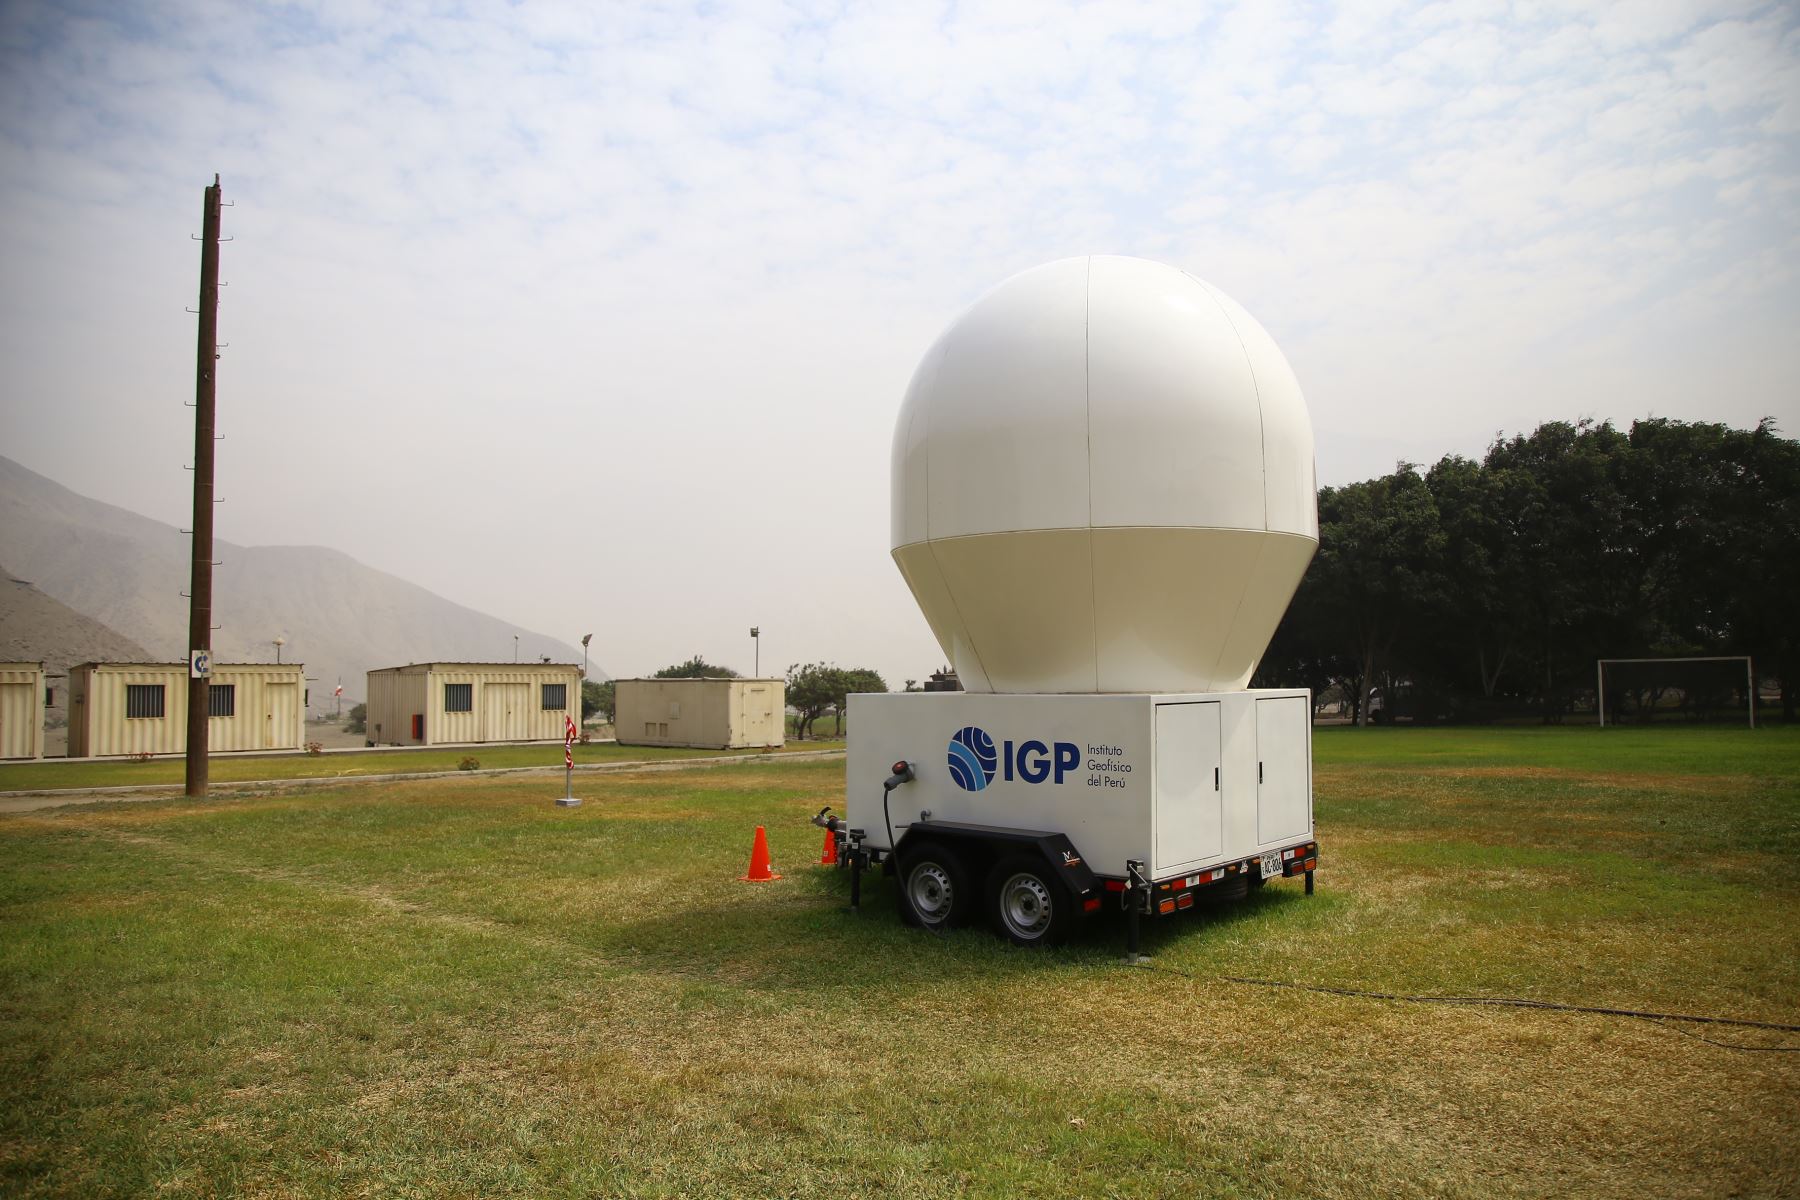 Radar SOPHy medirá lluvias y nieve para evaluar impacto del cambio climático en nevados